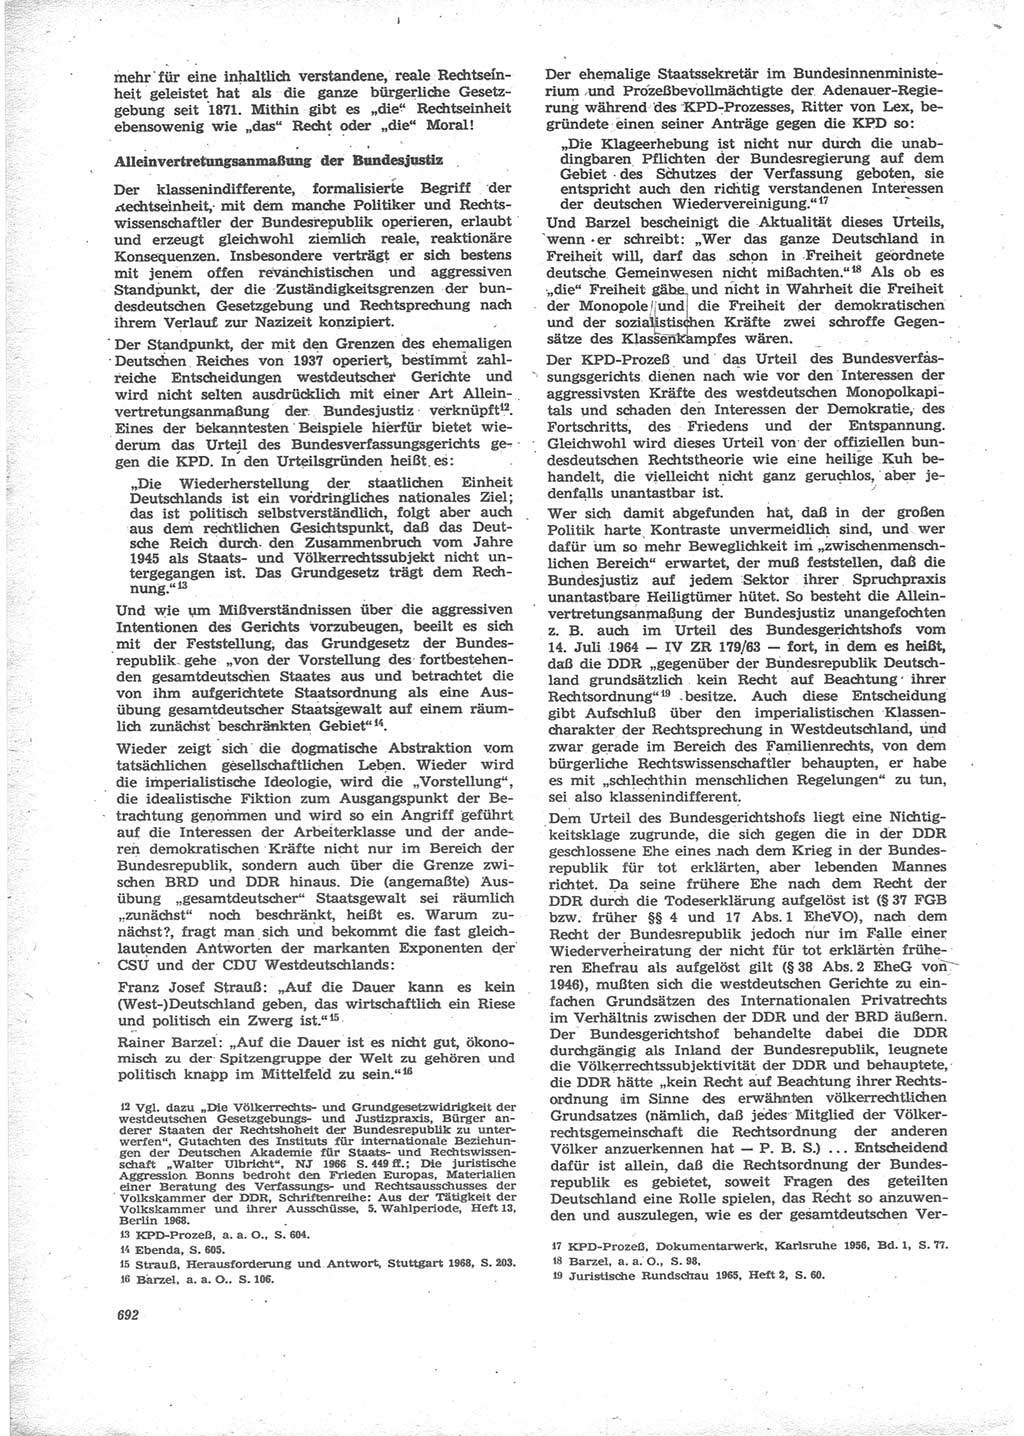 Neue Justiz (NJ), Zeitschrift für Recht und Rechtswissenschaft [Deutsche Demokratische Republik (DDR)], 24. Jahrgang 1970, Seite 692 (NJ DDR 1970, S. 692)